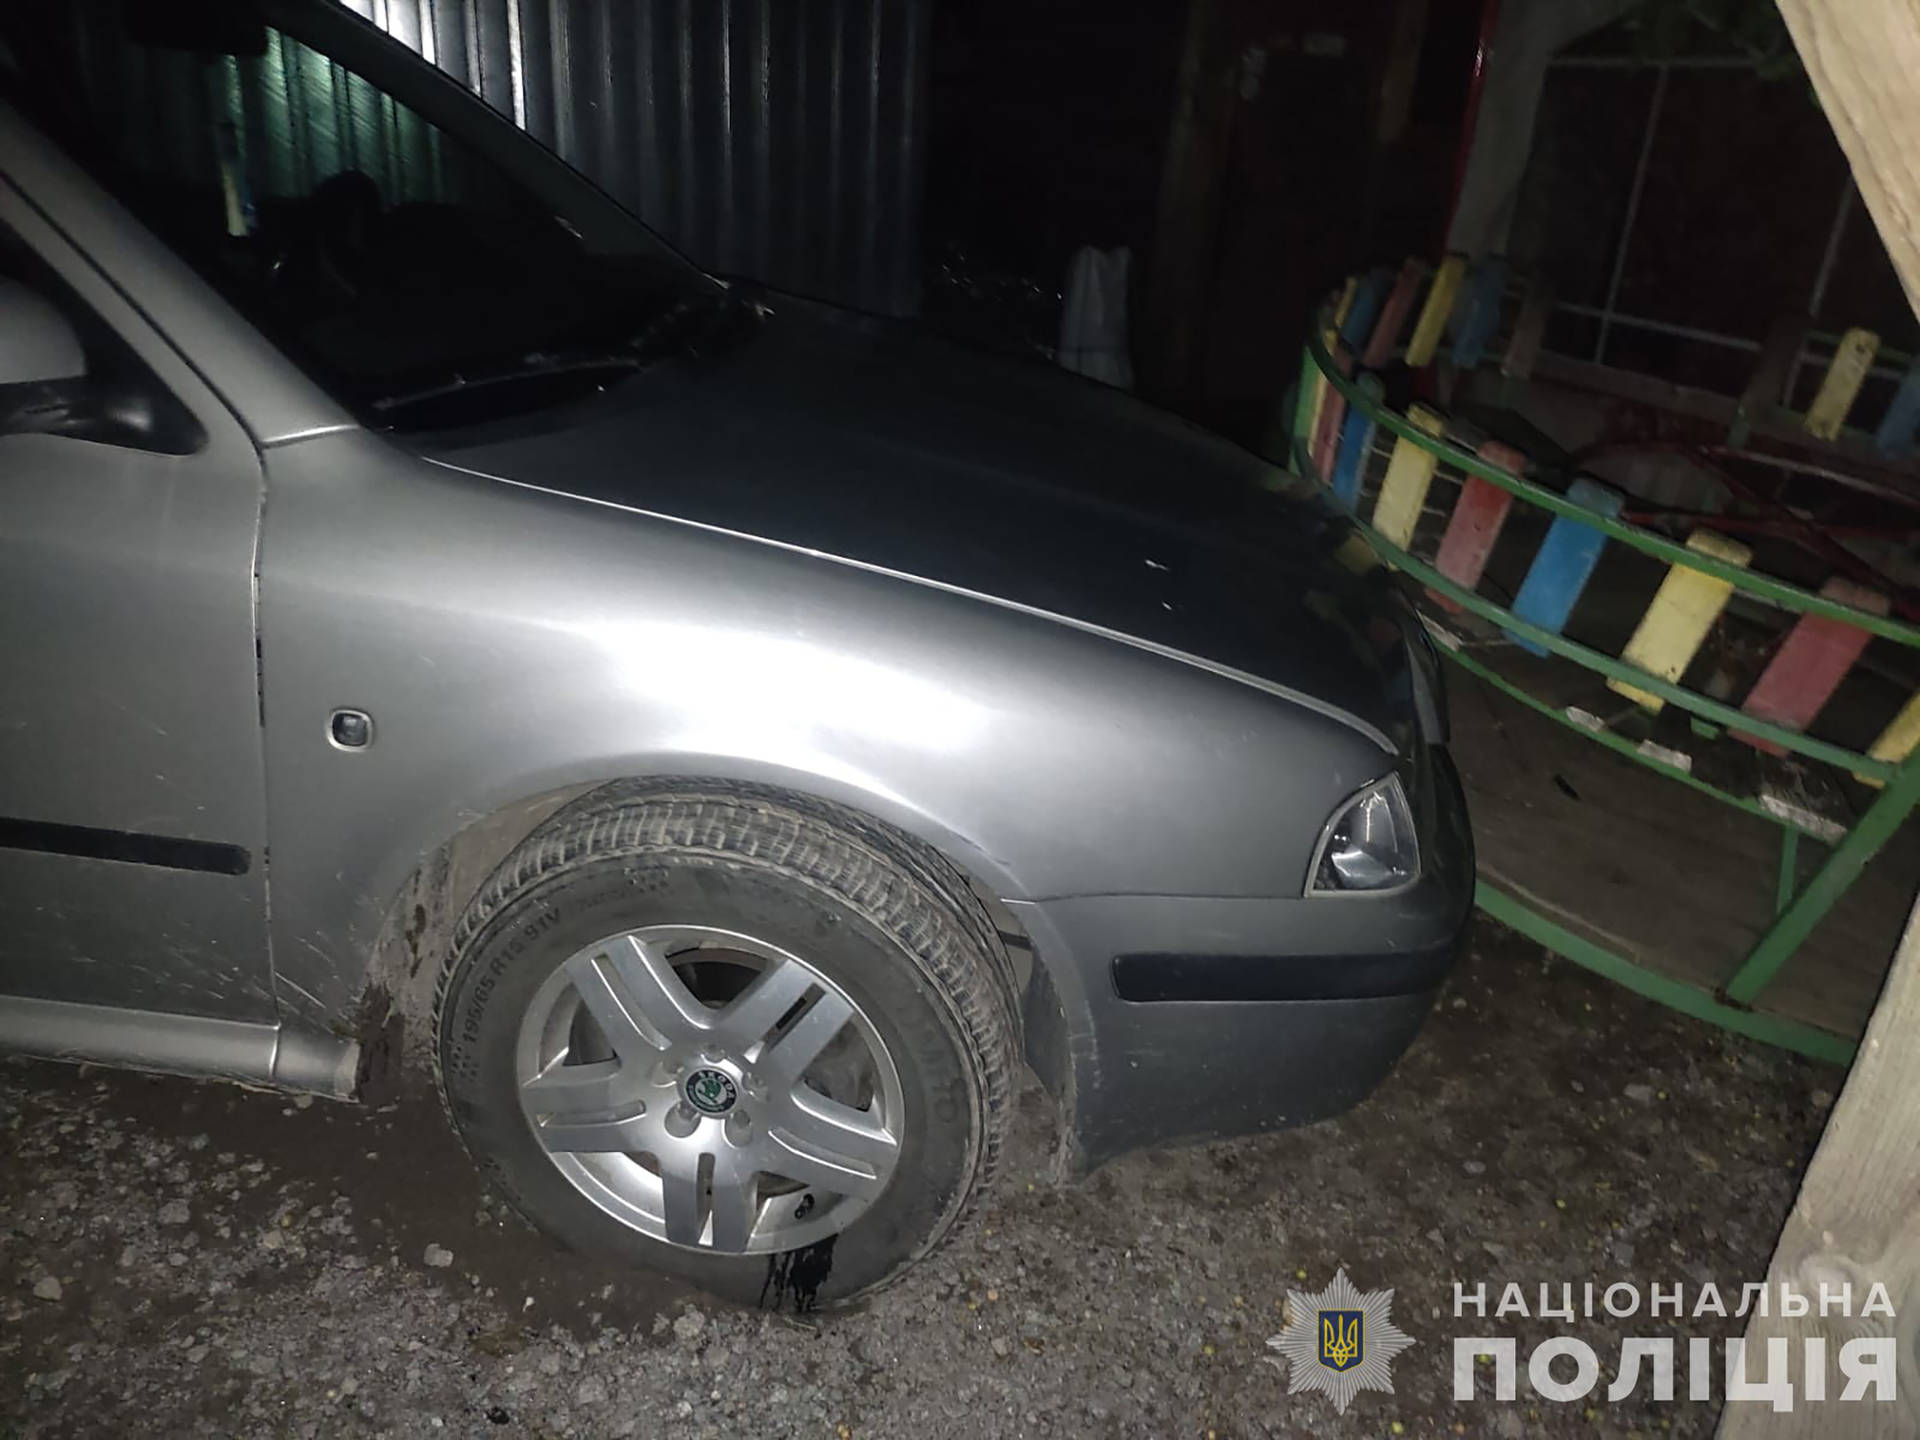 У Хмільницькому районі 20-річний хлопець викрав авто та проїхав на ньому лише кілька метрів